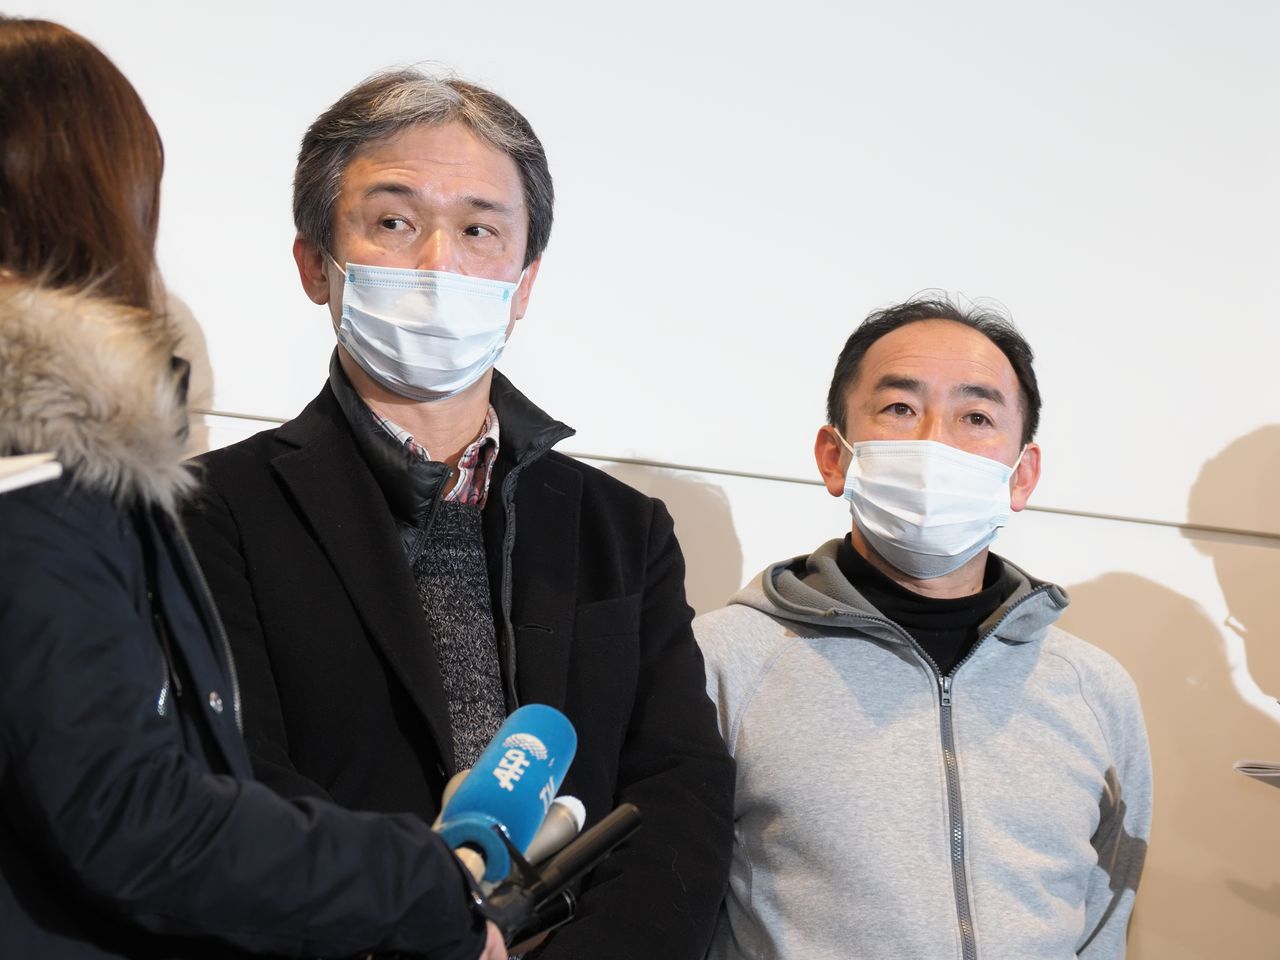 Граждане Японии, прилетевшие из Уханя домой, беседуют с представителями прессы в аэропорту Ханэда 29 января 2020 г. (© Jiji)